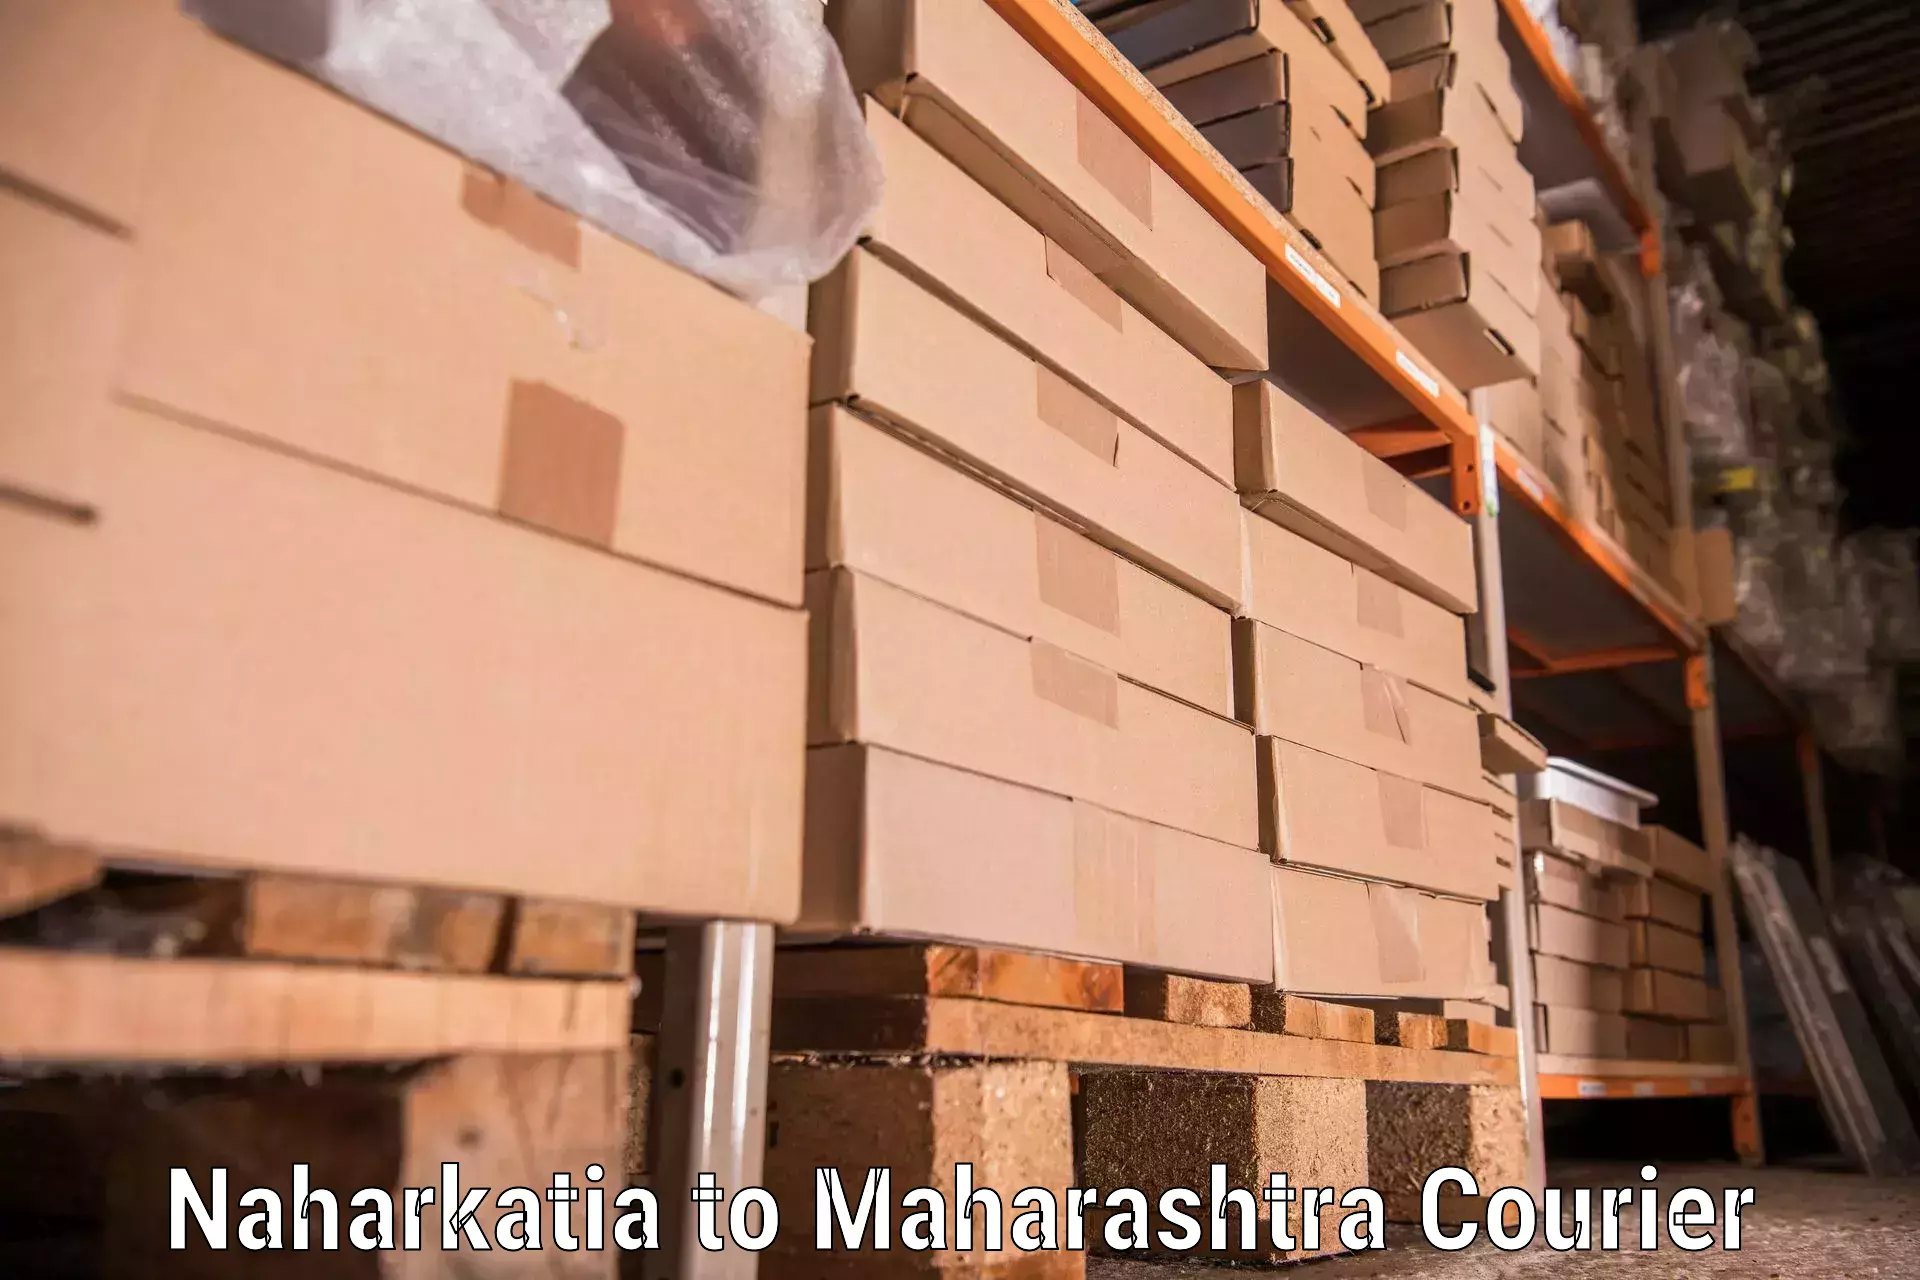 Efficient packing and moving Naharkatia to Wardha